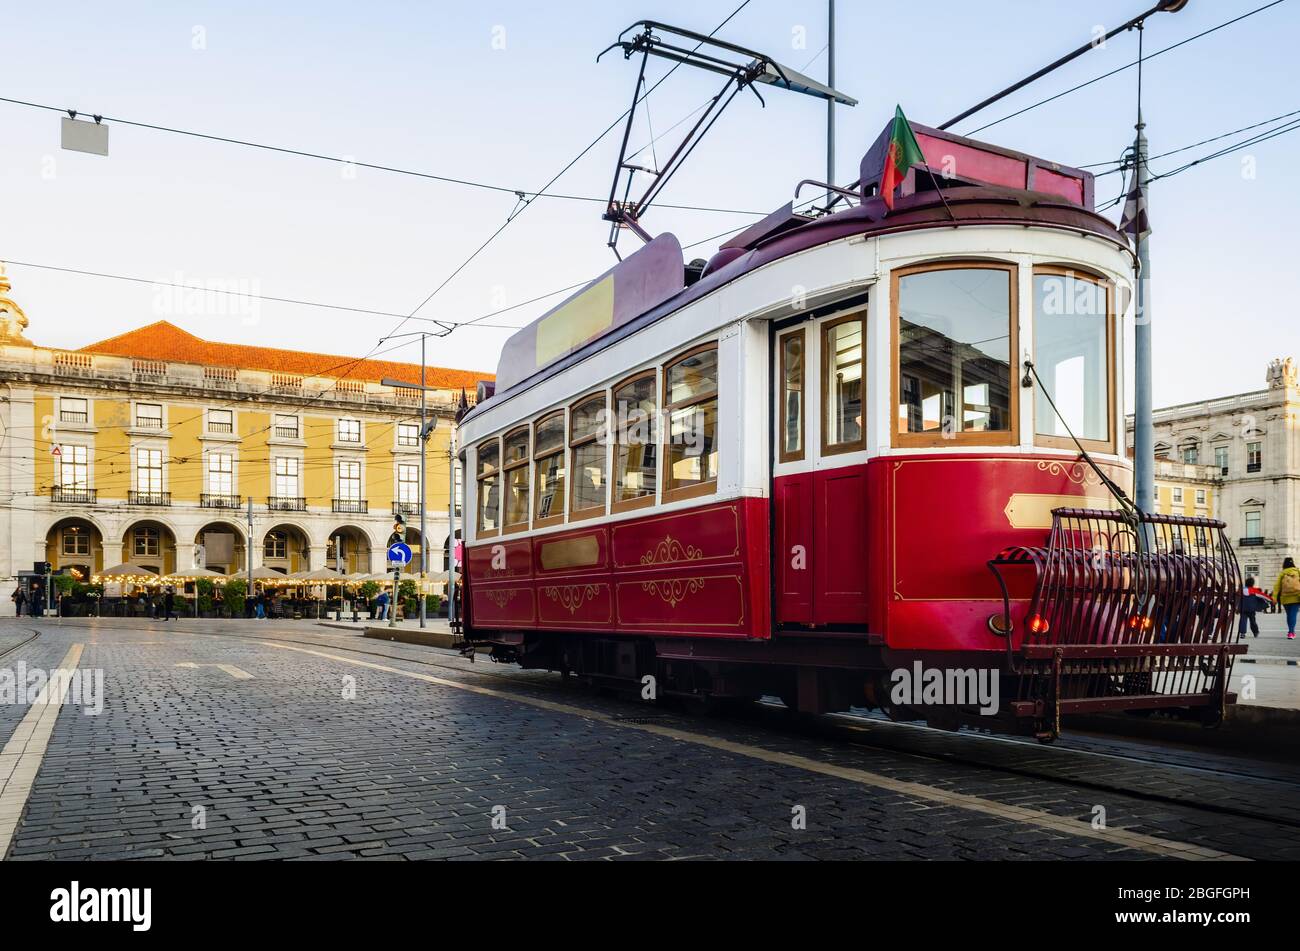 Il tradizionale trolley elettrico rosso con tram ferma a Praca do Comercio, la piazza principale del quartiere Baixa di Lisbona, Portogallo Foto Stock